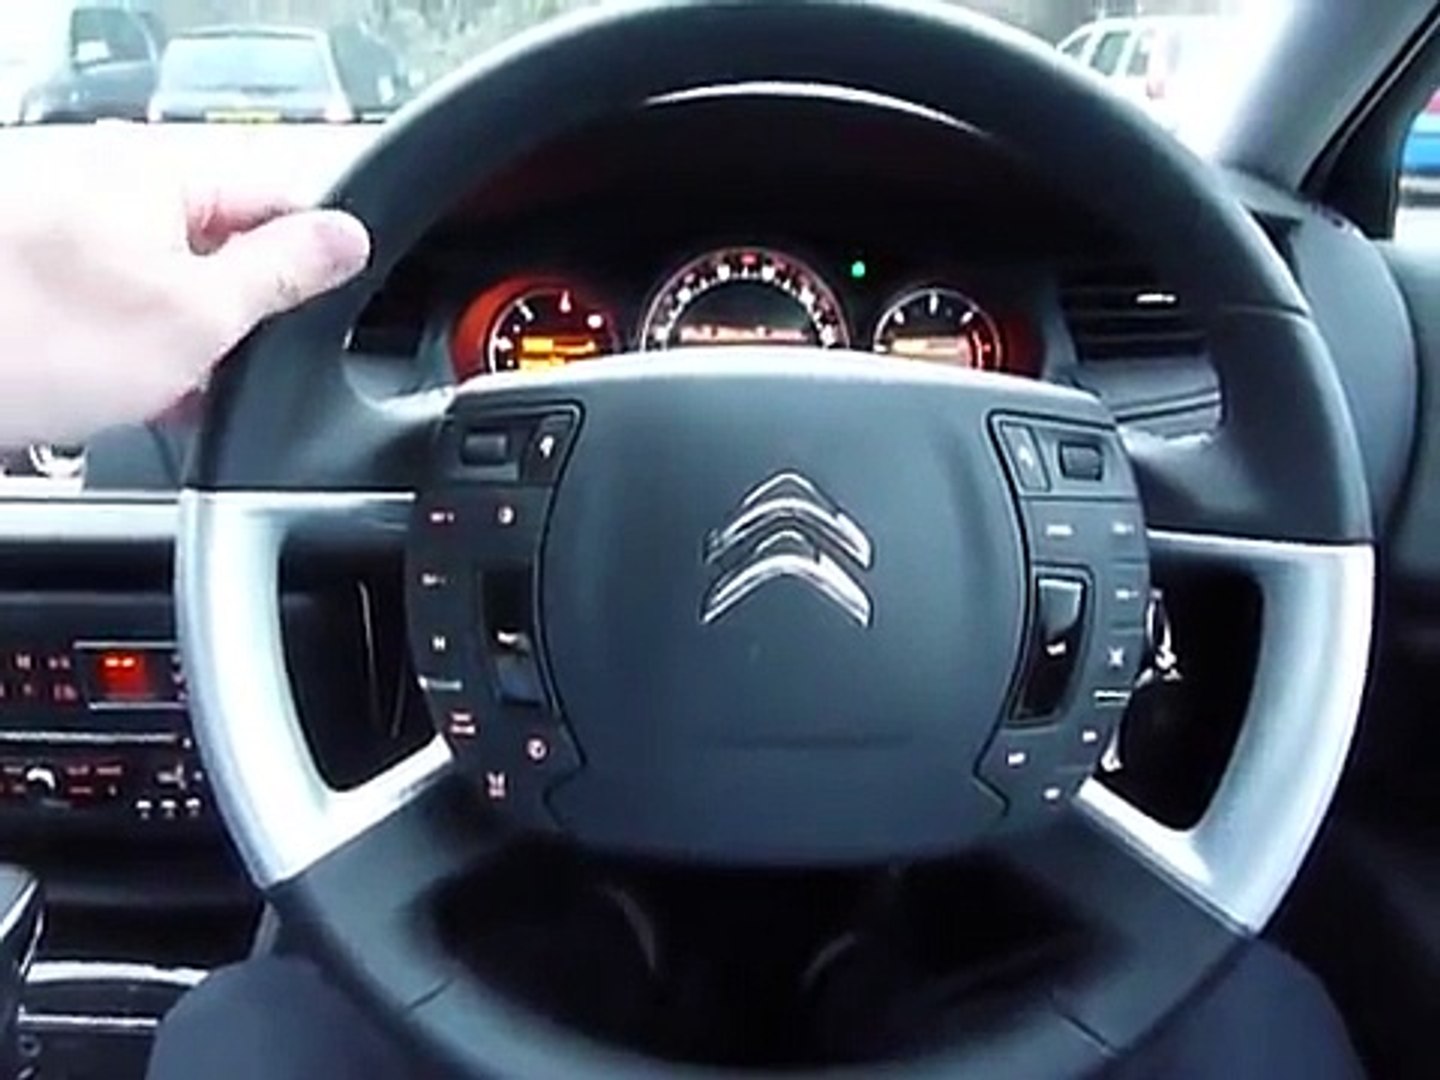 Citroen C5 steering wheel - video Dailymotion